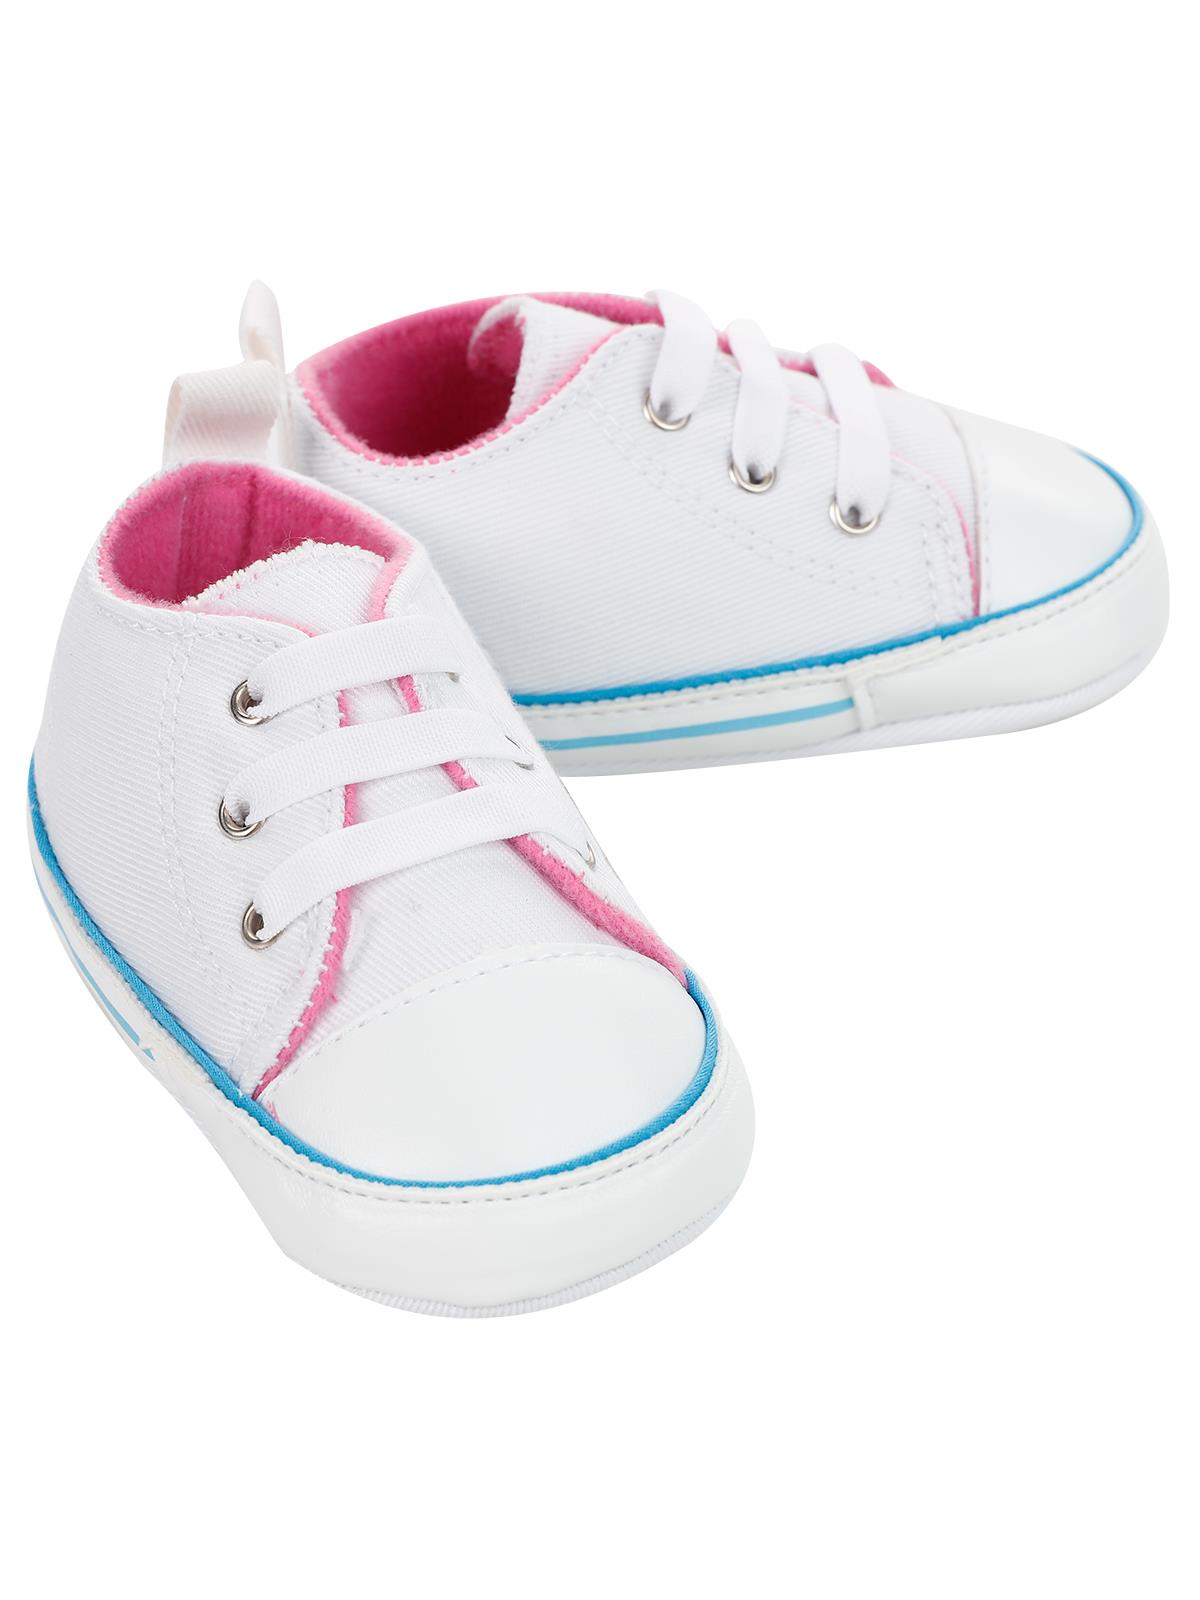 Civil Baby Kız Bebek Patik Ayakkabı 18-20 Numara Beyaz